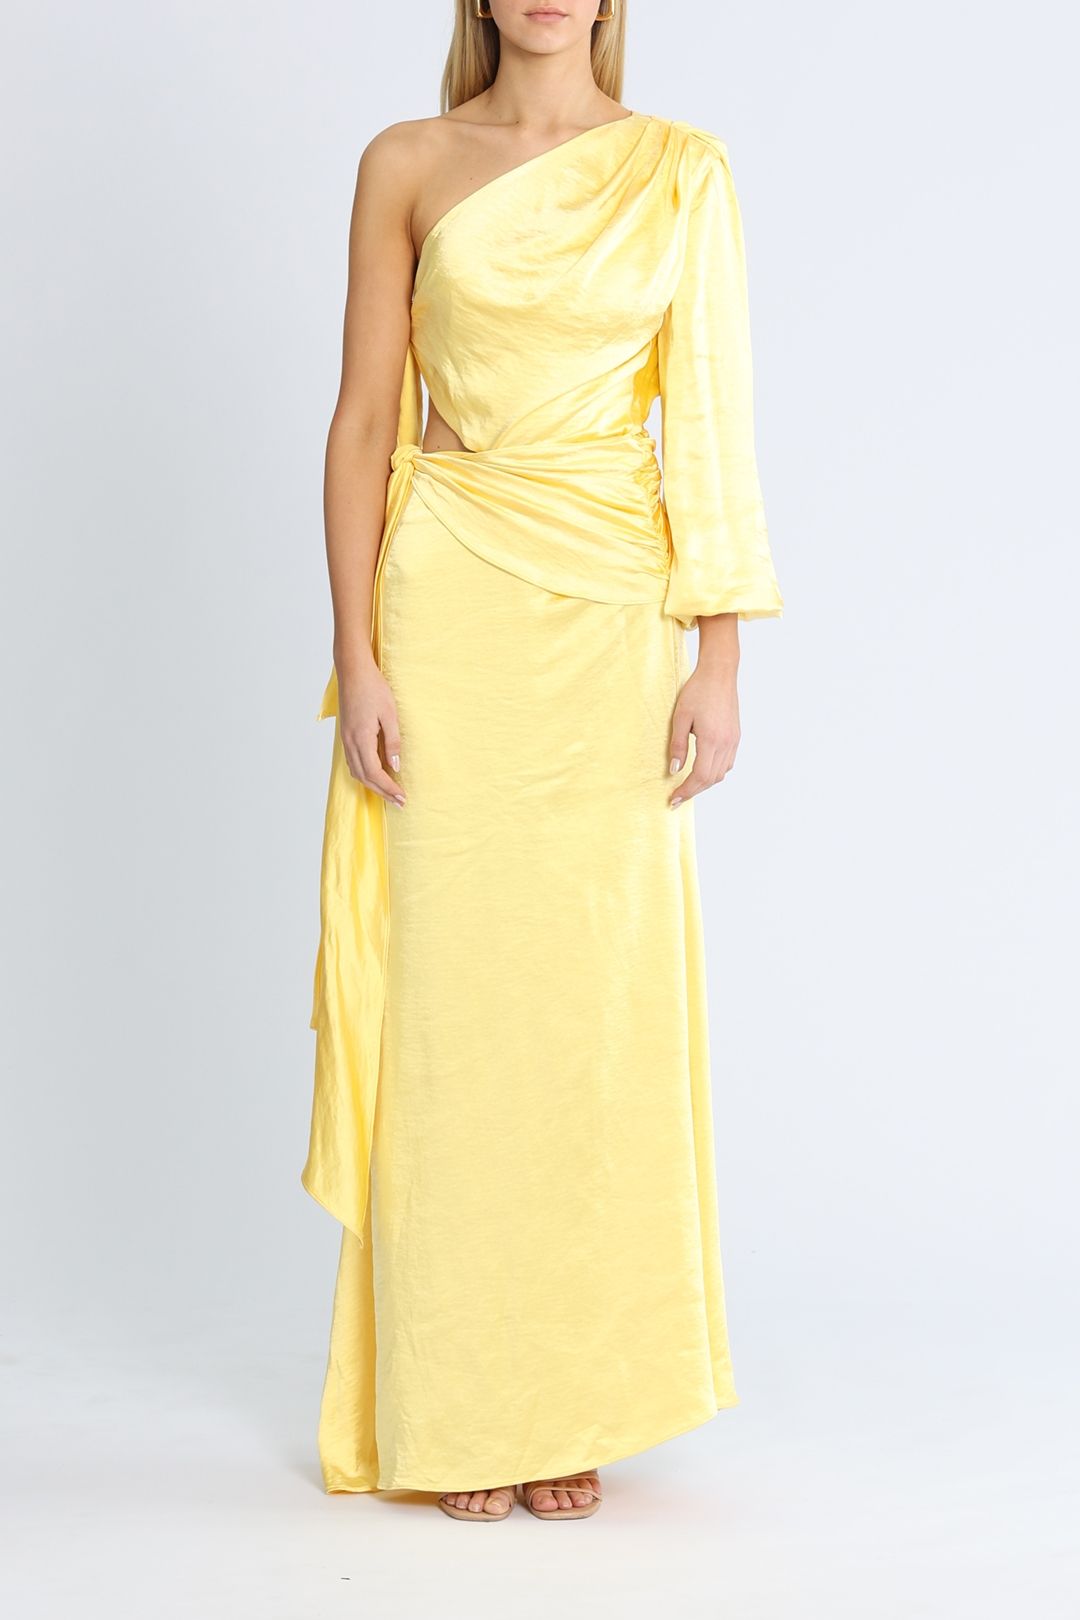 Elliatt Memento Dress Yellow